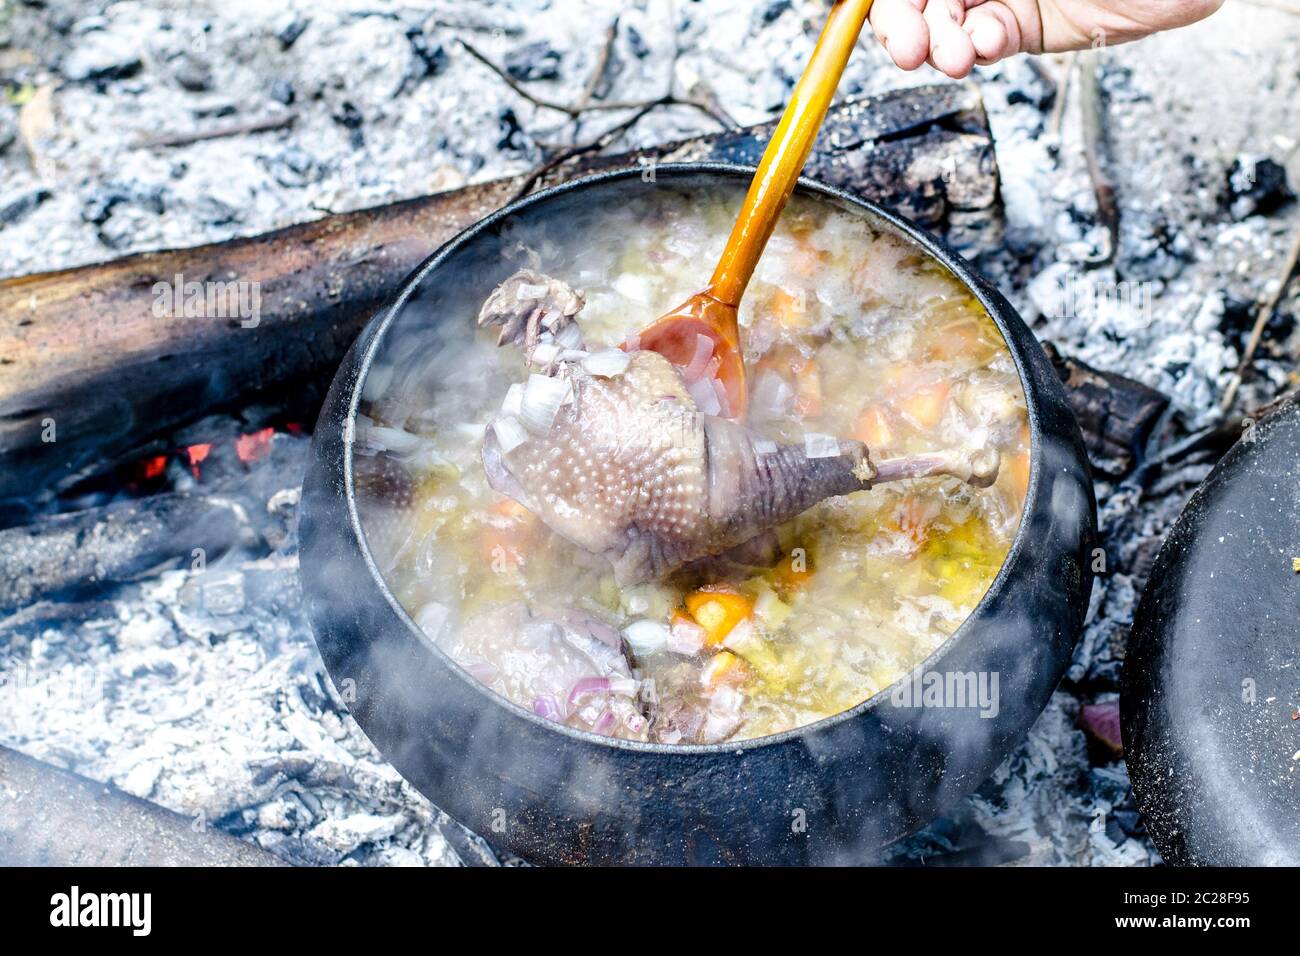 La soupe est cuite dans un pot touristique sur le feu Banque D'Images